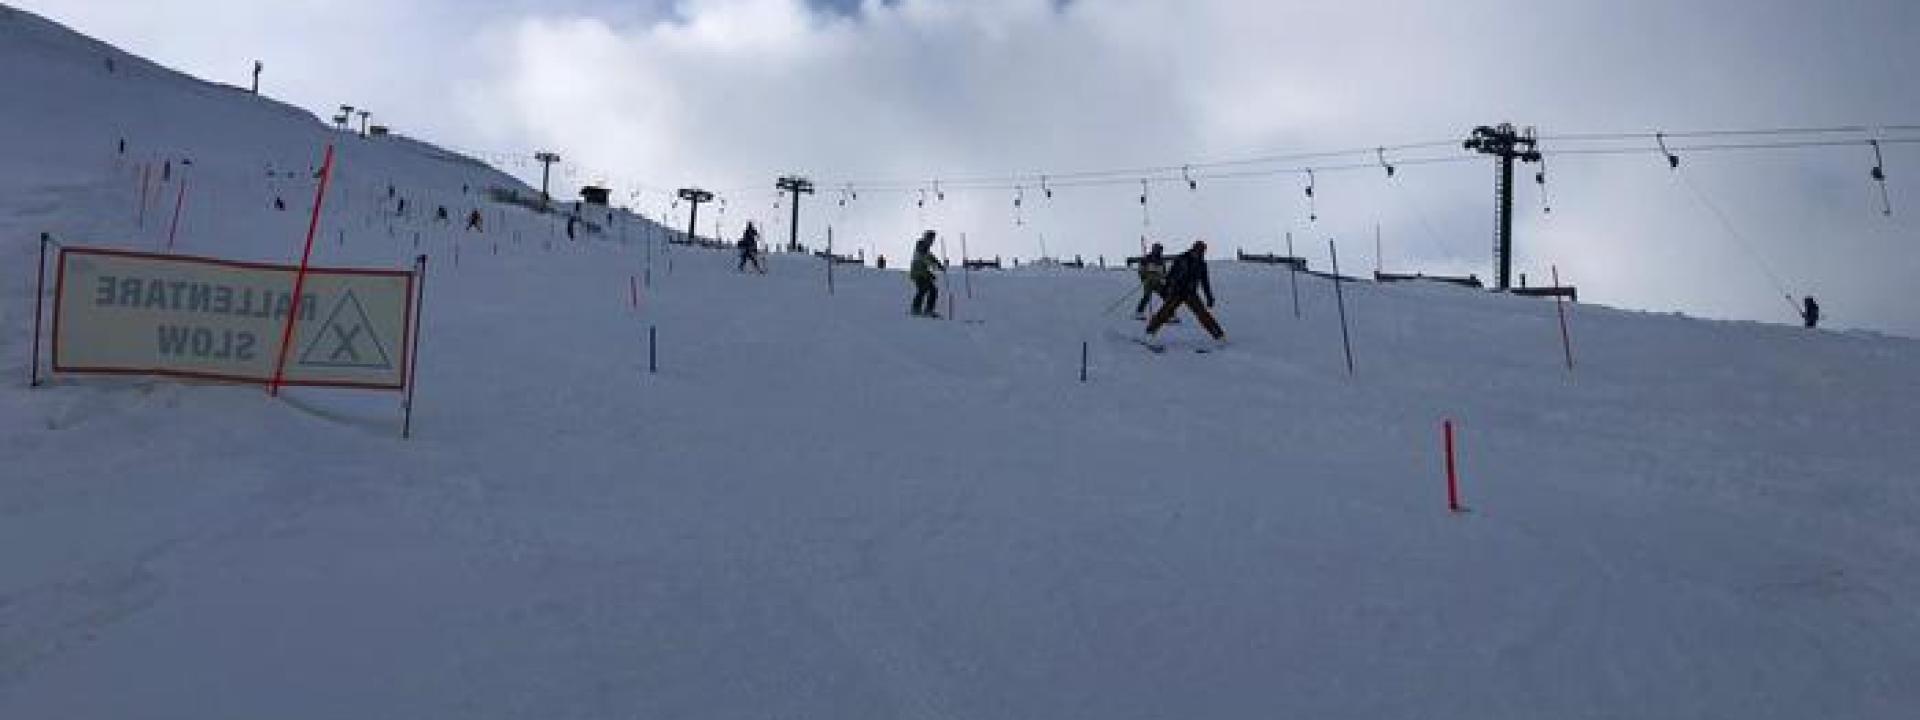 Marche - Prima neve sui Sibillini, impianti aperti l'8 dicembre